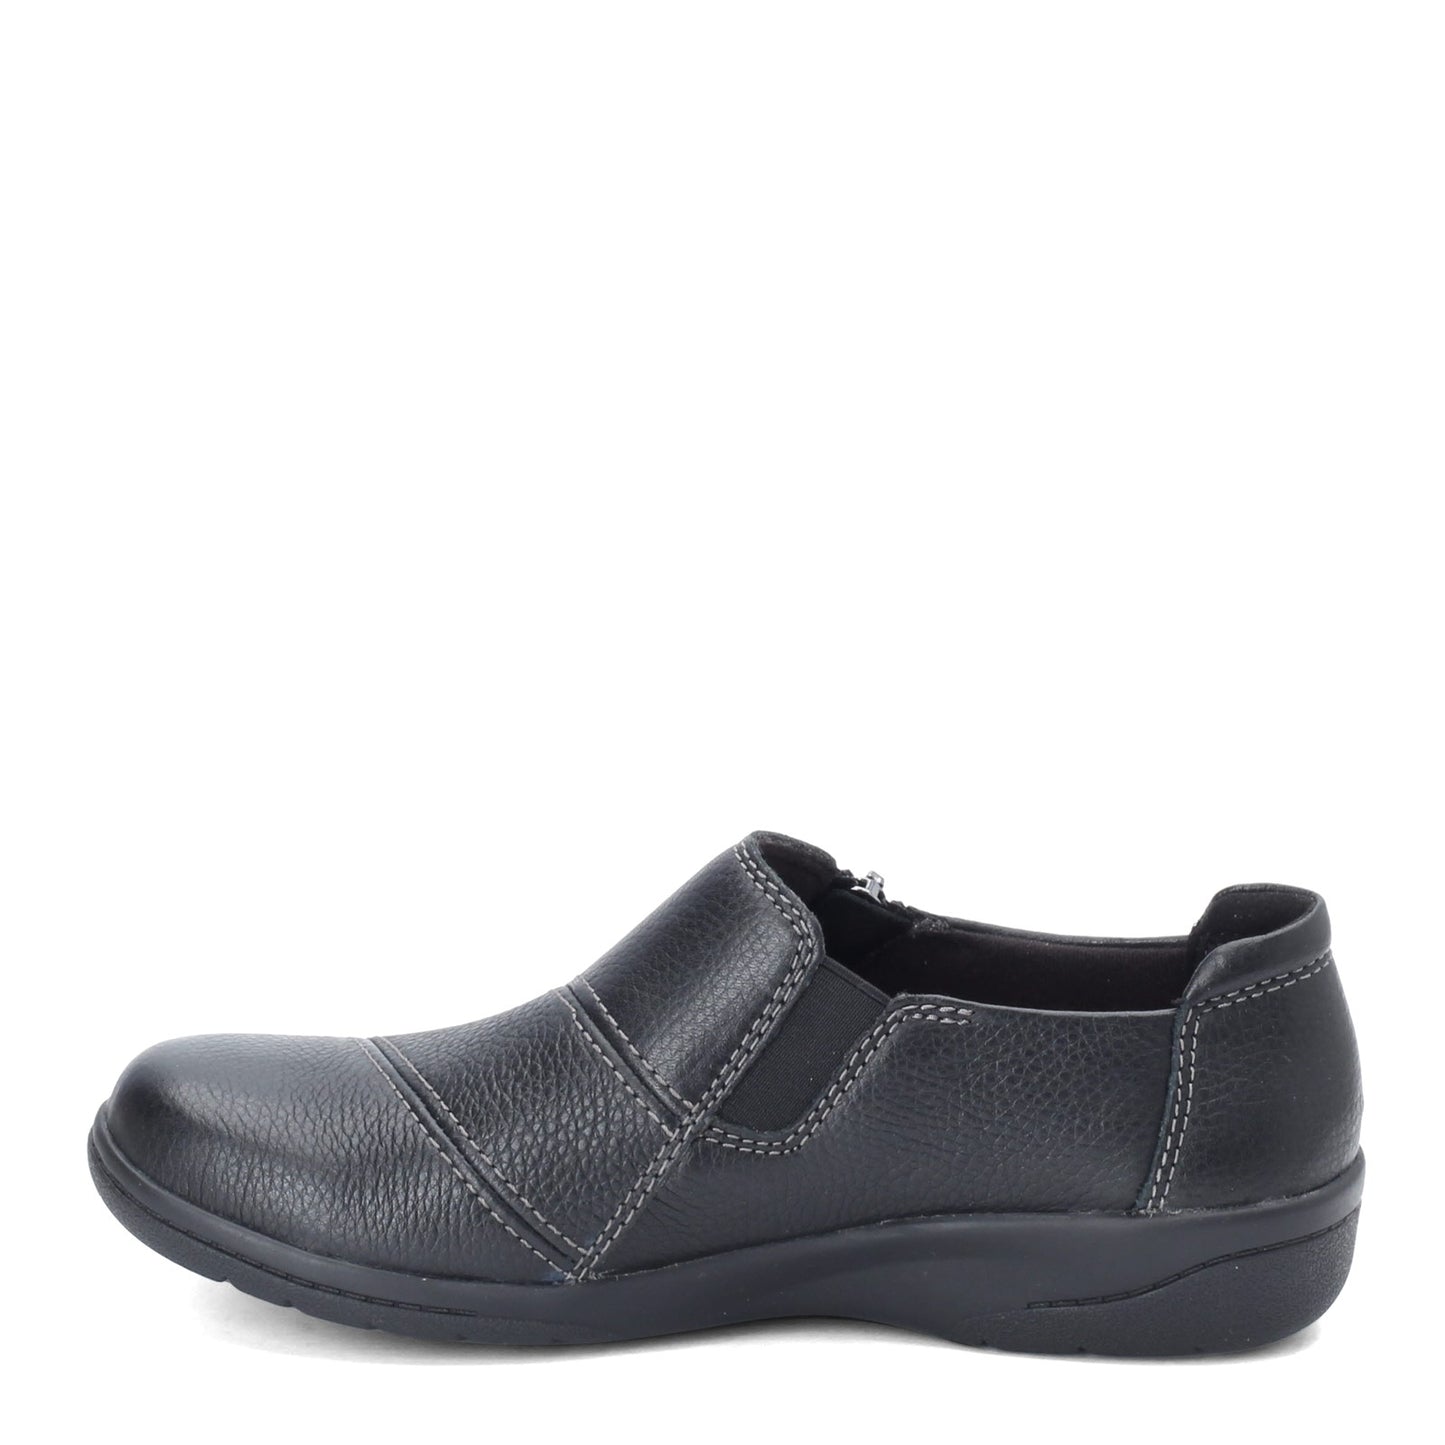 Peltz Shoes  Women's Clarks Cheyn Clay Loafer BLACK 26136741